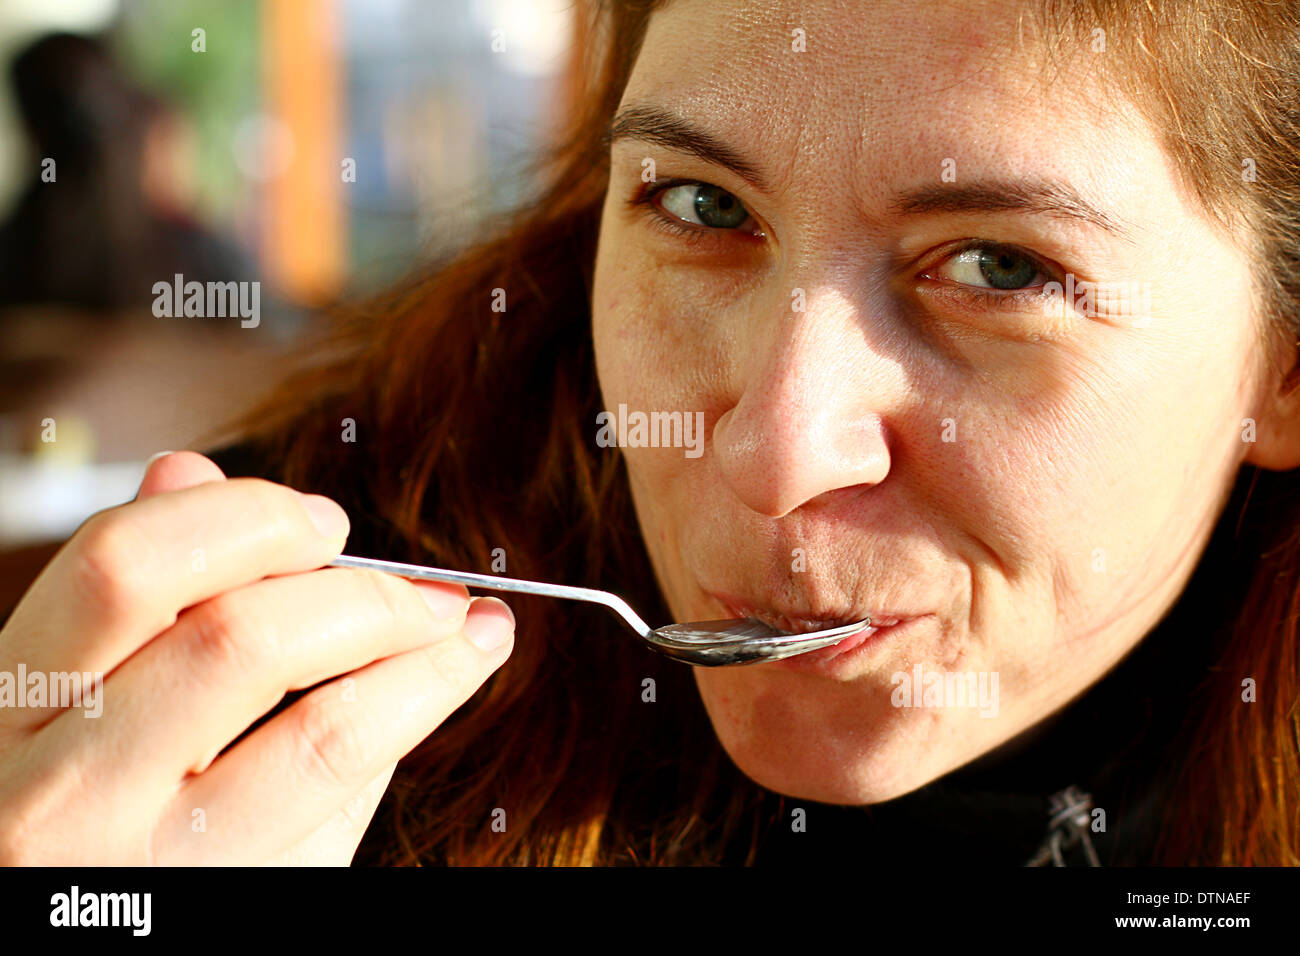 Young Turkish Women Tasting Sweet Desert Stock Photo